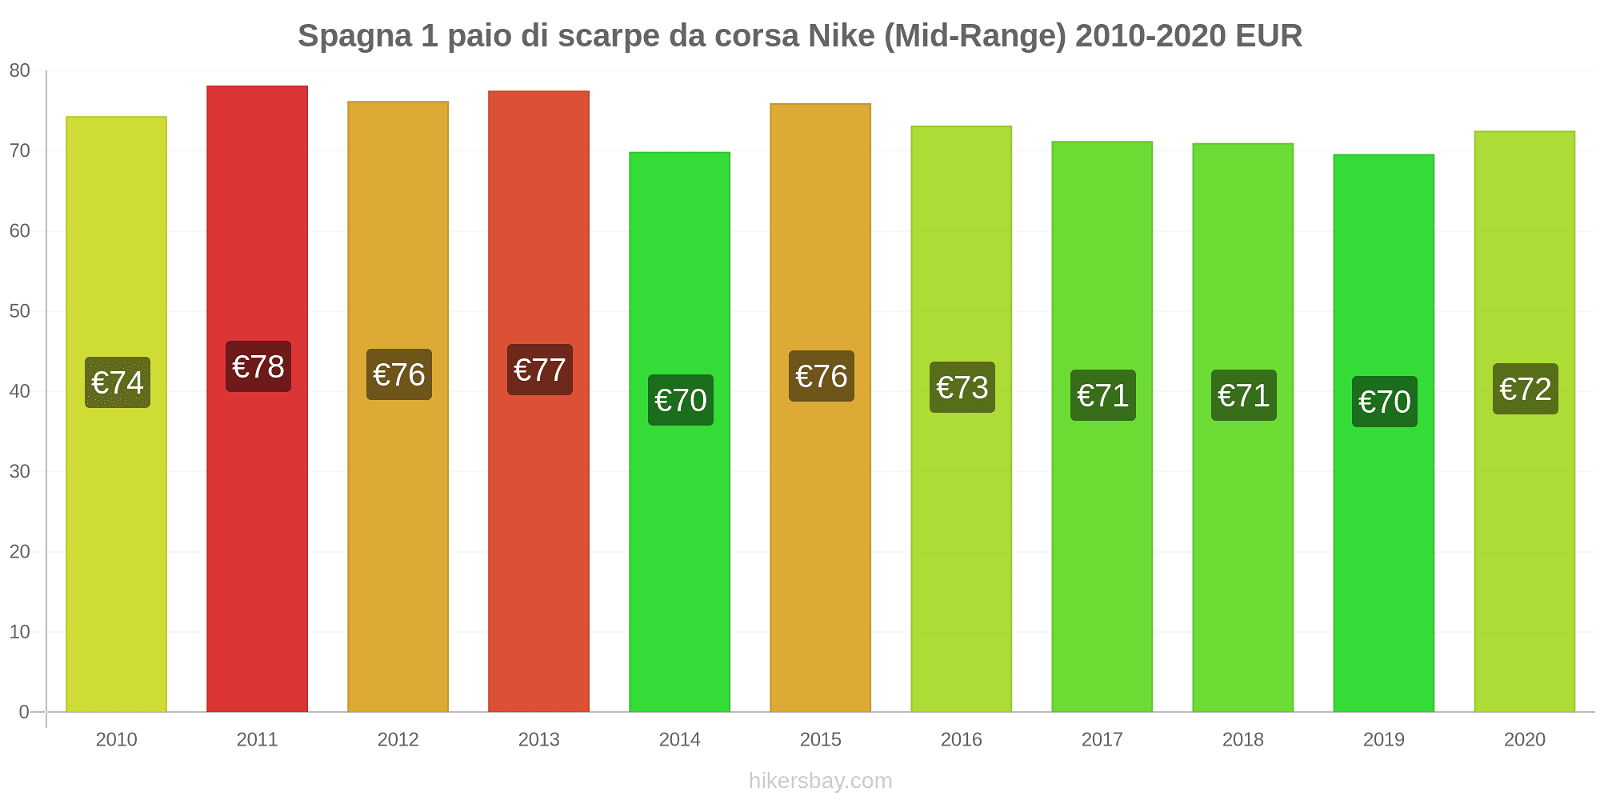 Spagna variazioni di prezzo 1 paio di scarpe da corsa Nike (simile) hikersbay.com